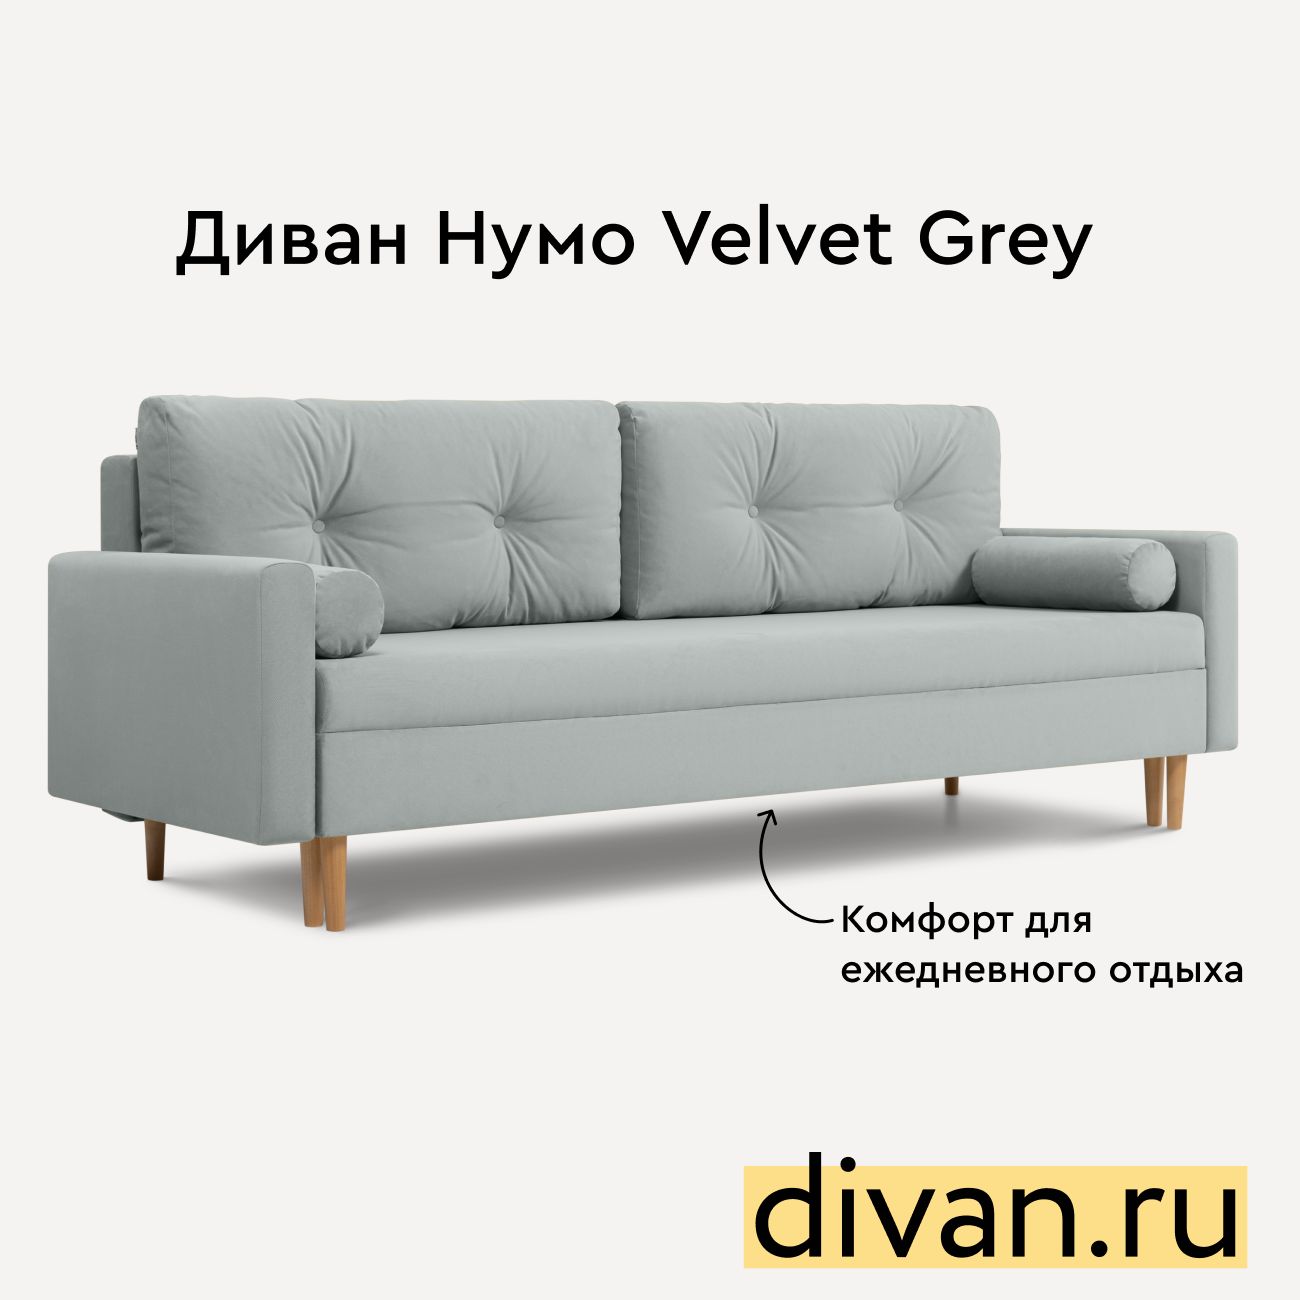 Диван Divan.ru Нумо Velvet Grey - купить в Москве, цены на Мегамаркет | 600016270974